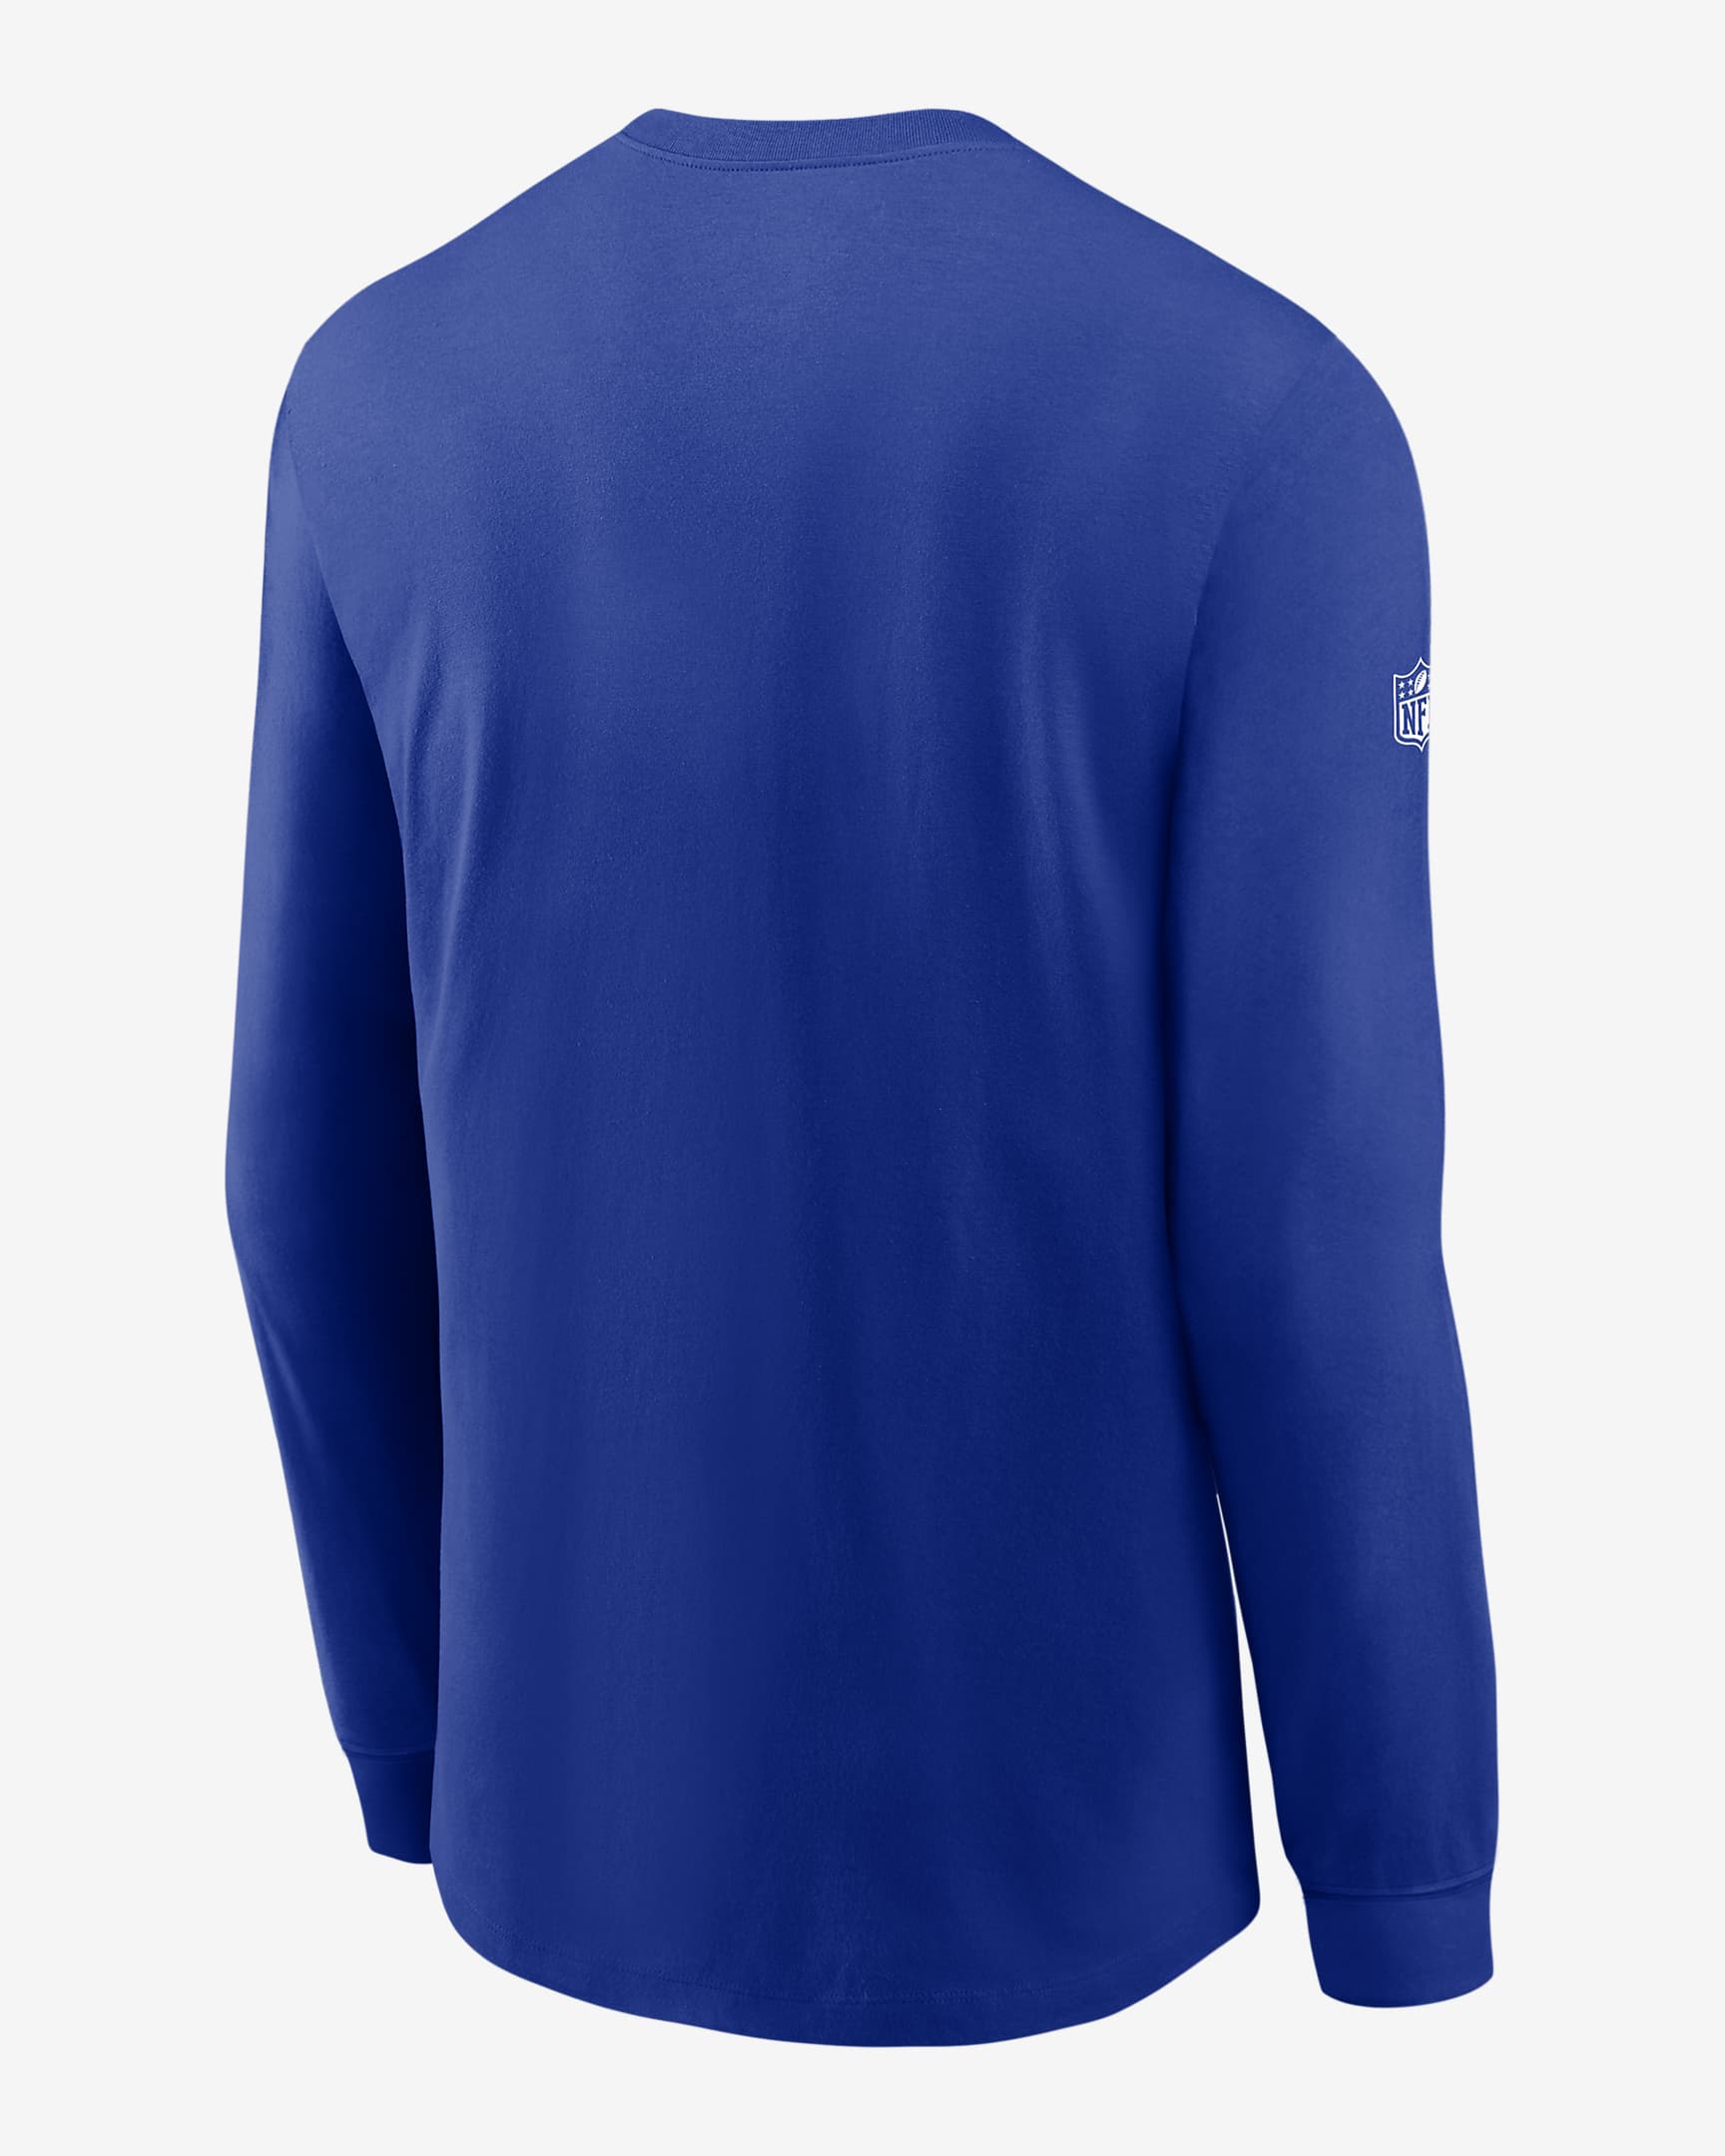 Nike Dri-FIT Sideline Team (NFL Buffalo Bills) Men's Long-Sleeve T ...